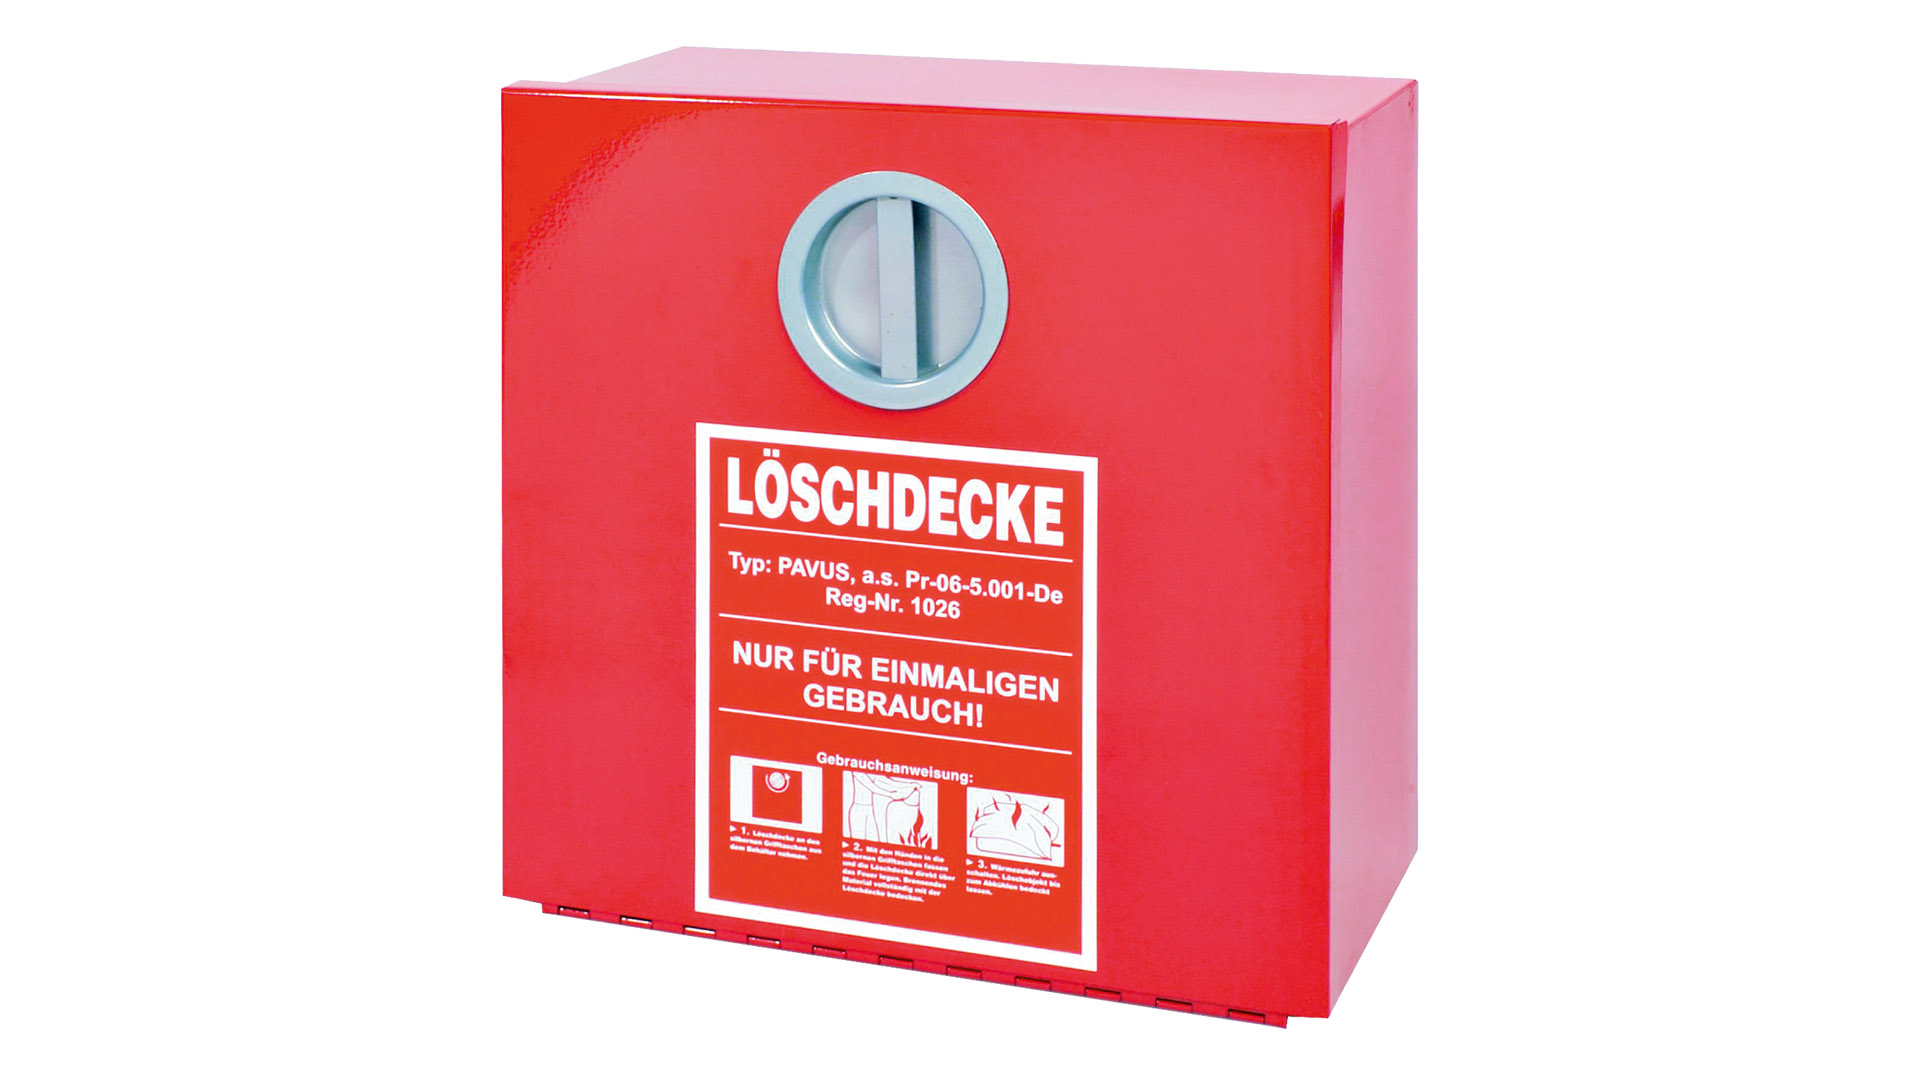 Metall-Wandbehälter für Löschdecke, rot lackiert, BxTxH 300x300x125 mm